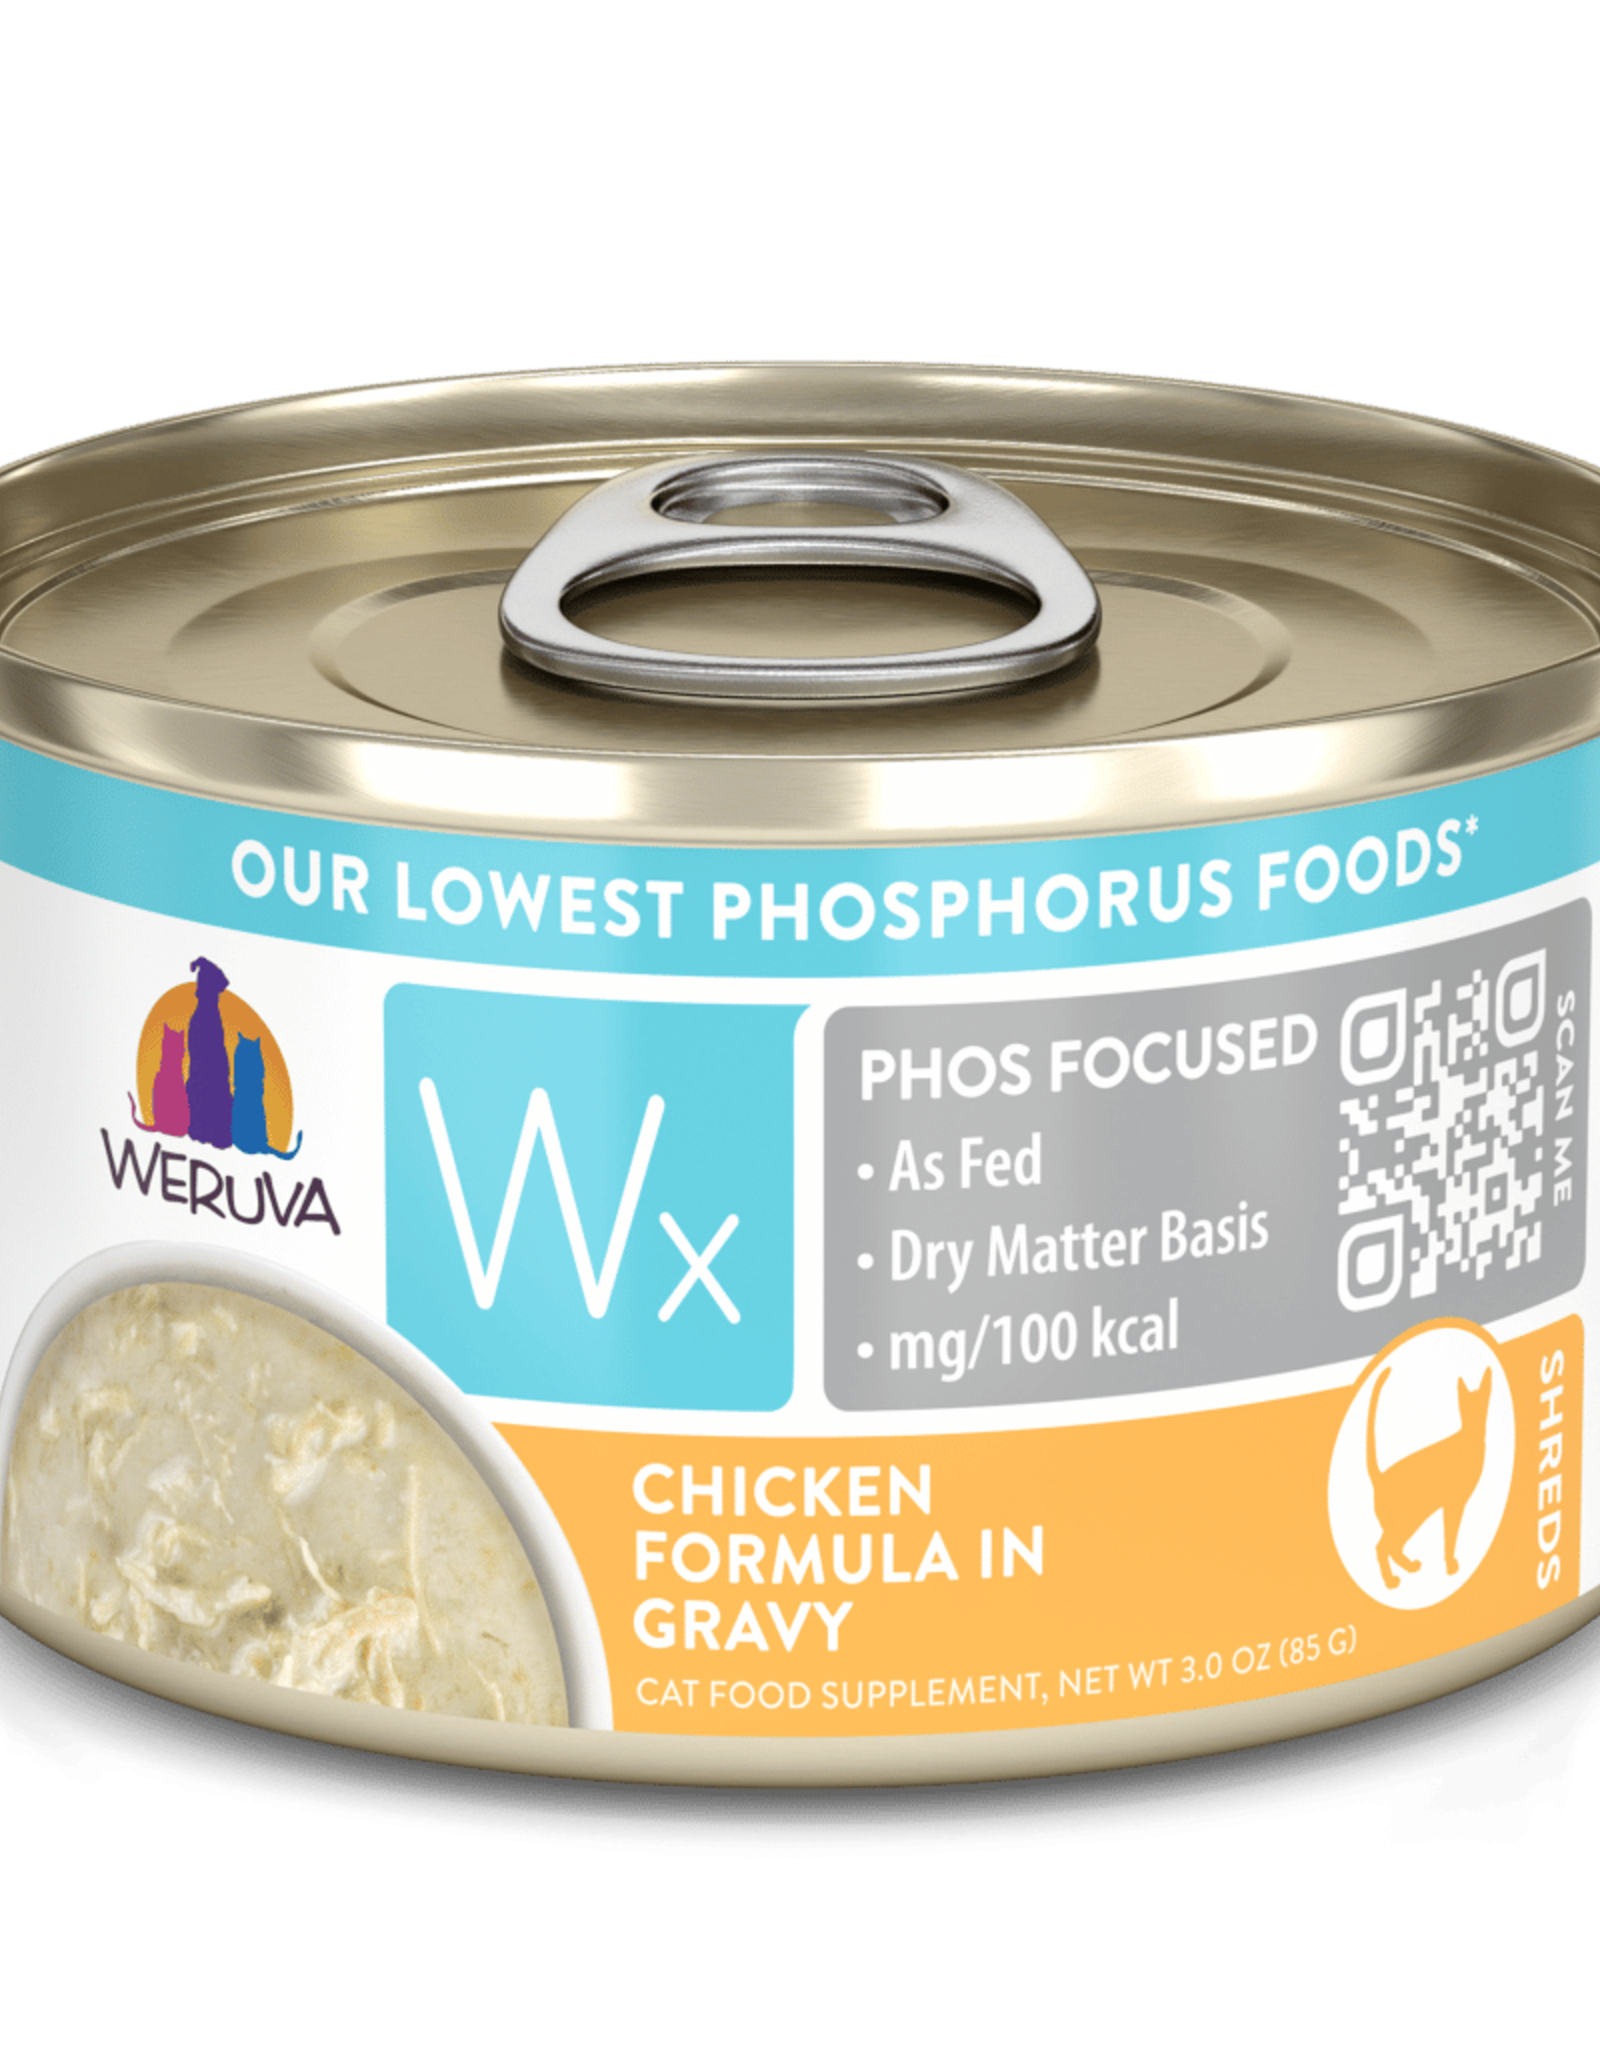 Weruva Wx Chicken Formula in Gravy